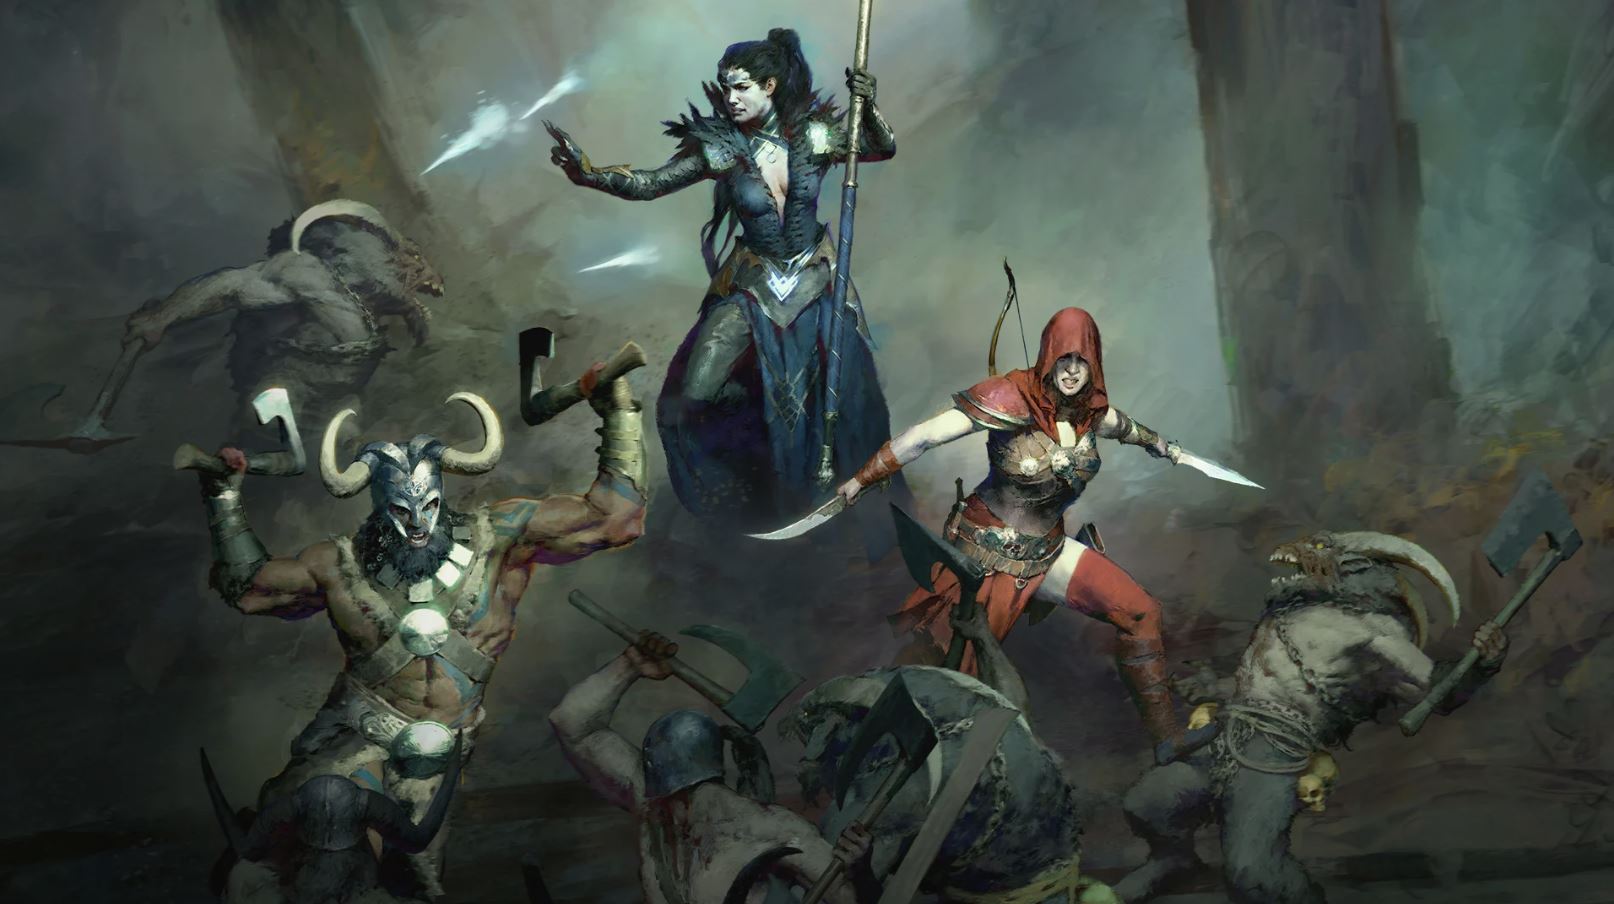 Diablo 4 Edition Comparison Guide: All Edition Contents